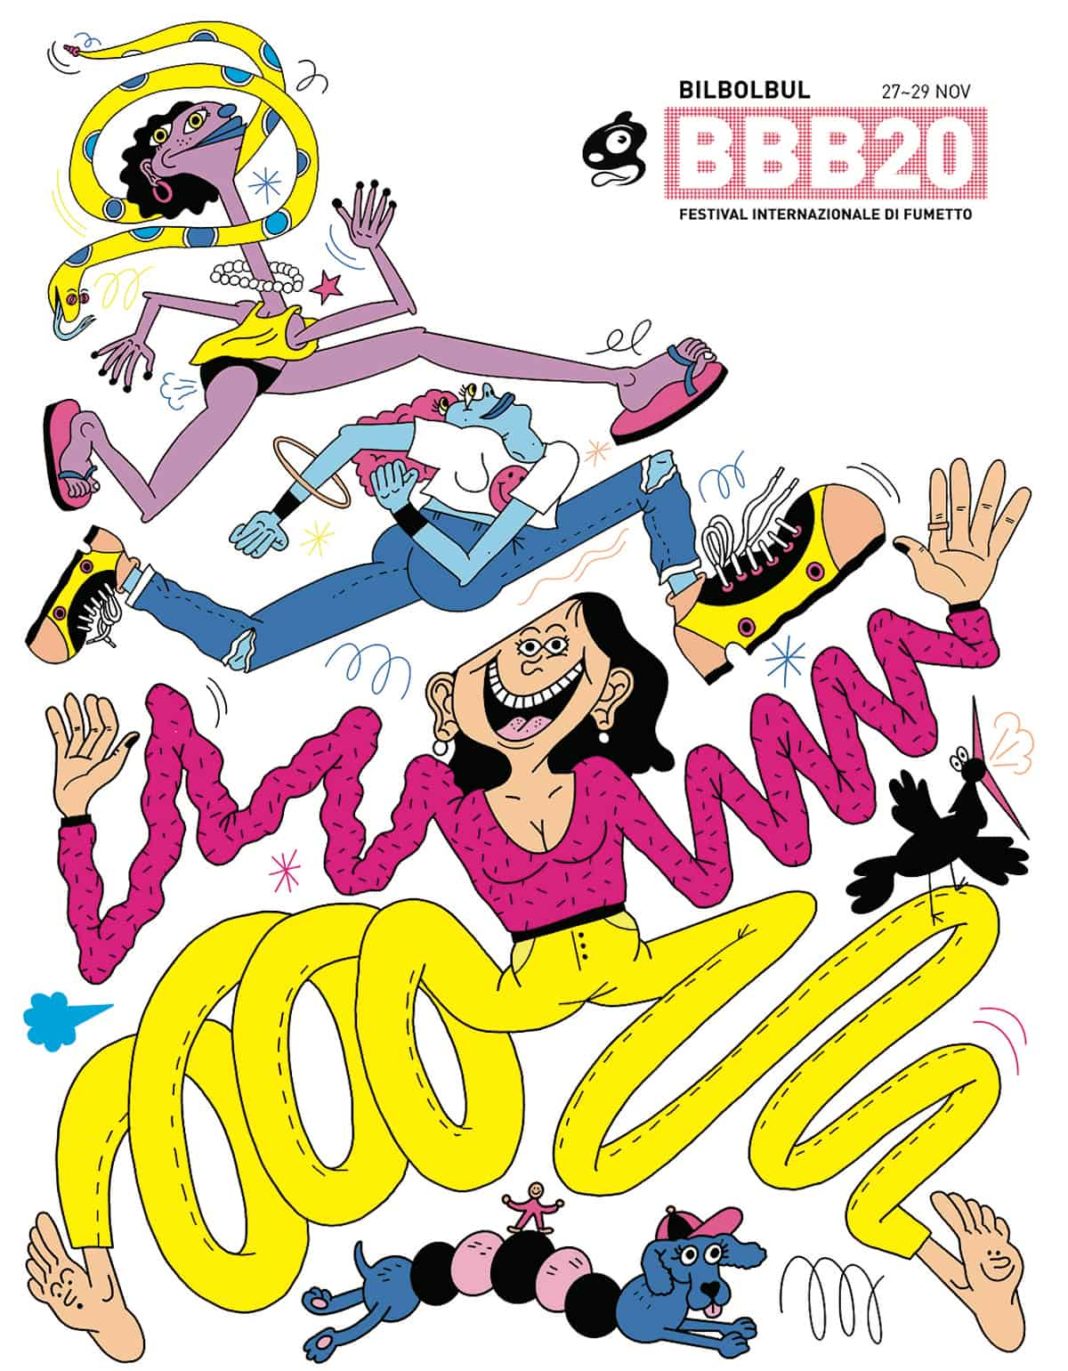 bilbolbul 2020, festival internazionale del fumetto, festival bologna